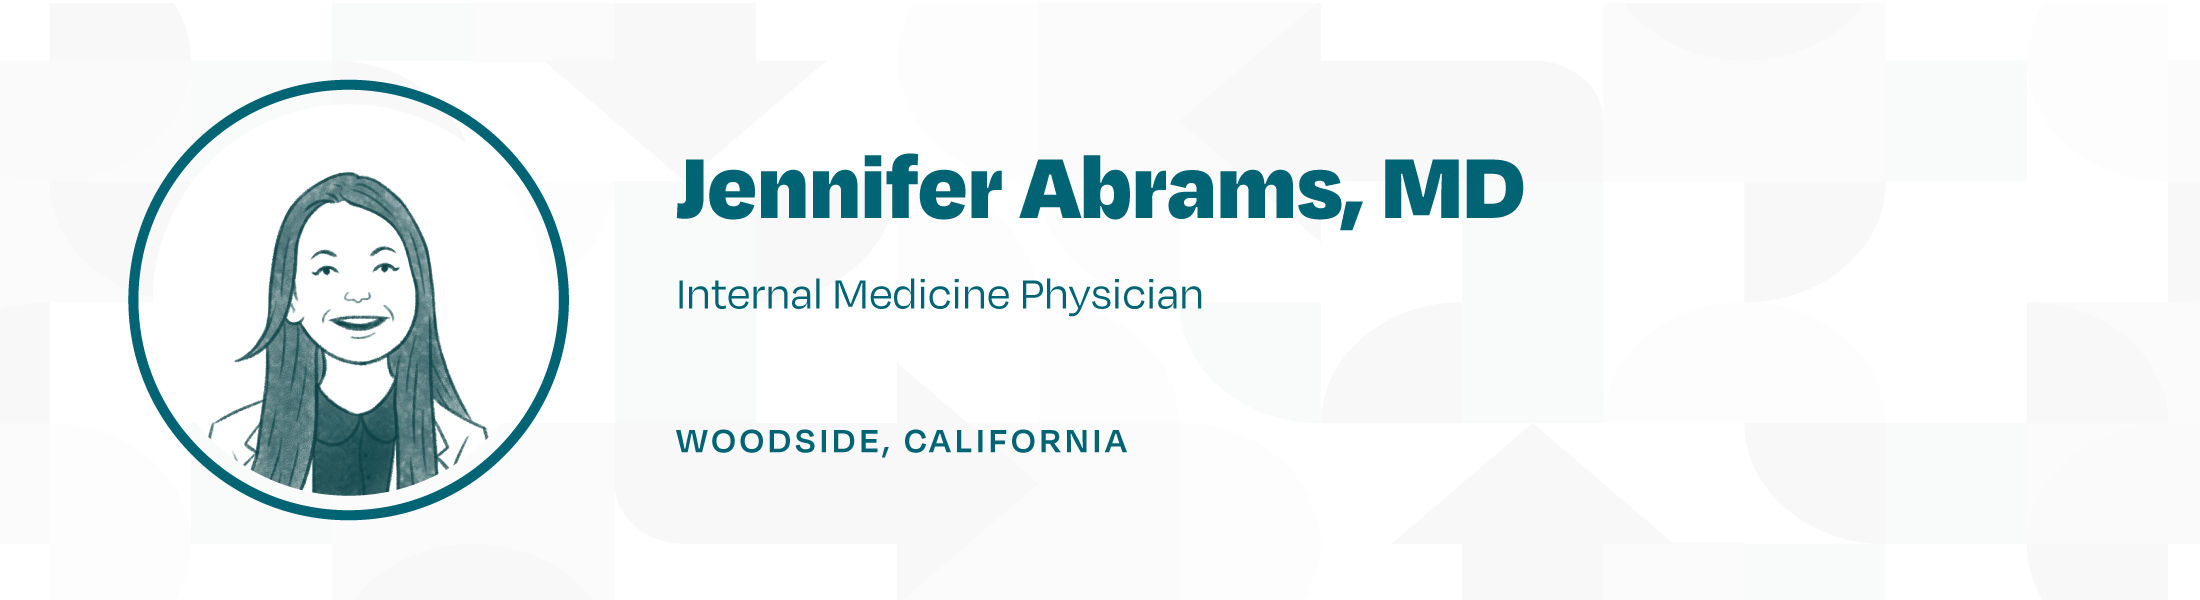 Dr. Jennifer Abrams Banner - Village Doctor Oct 22 Newsletter